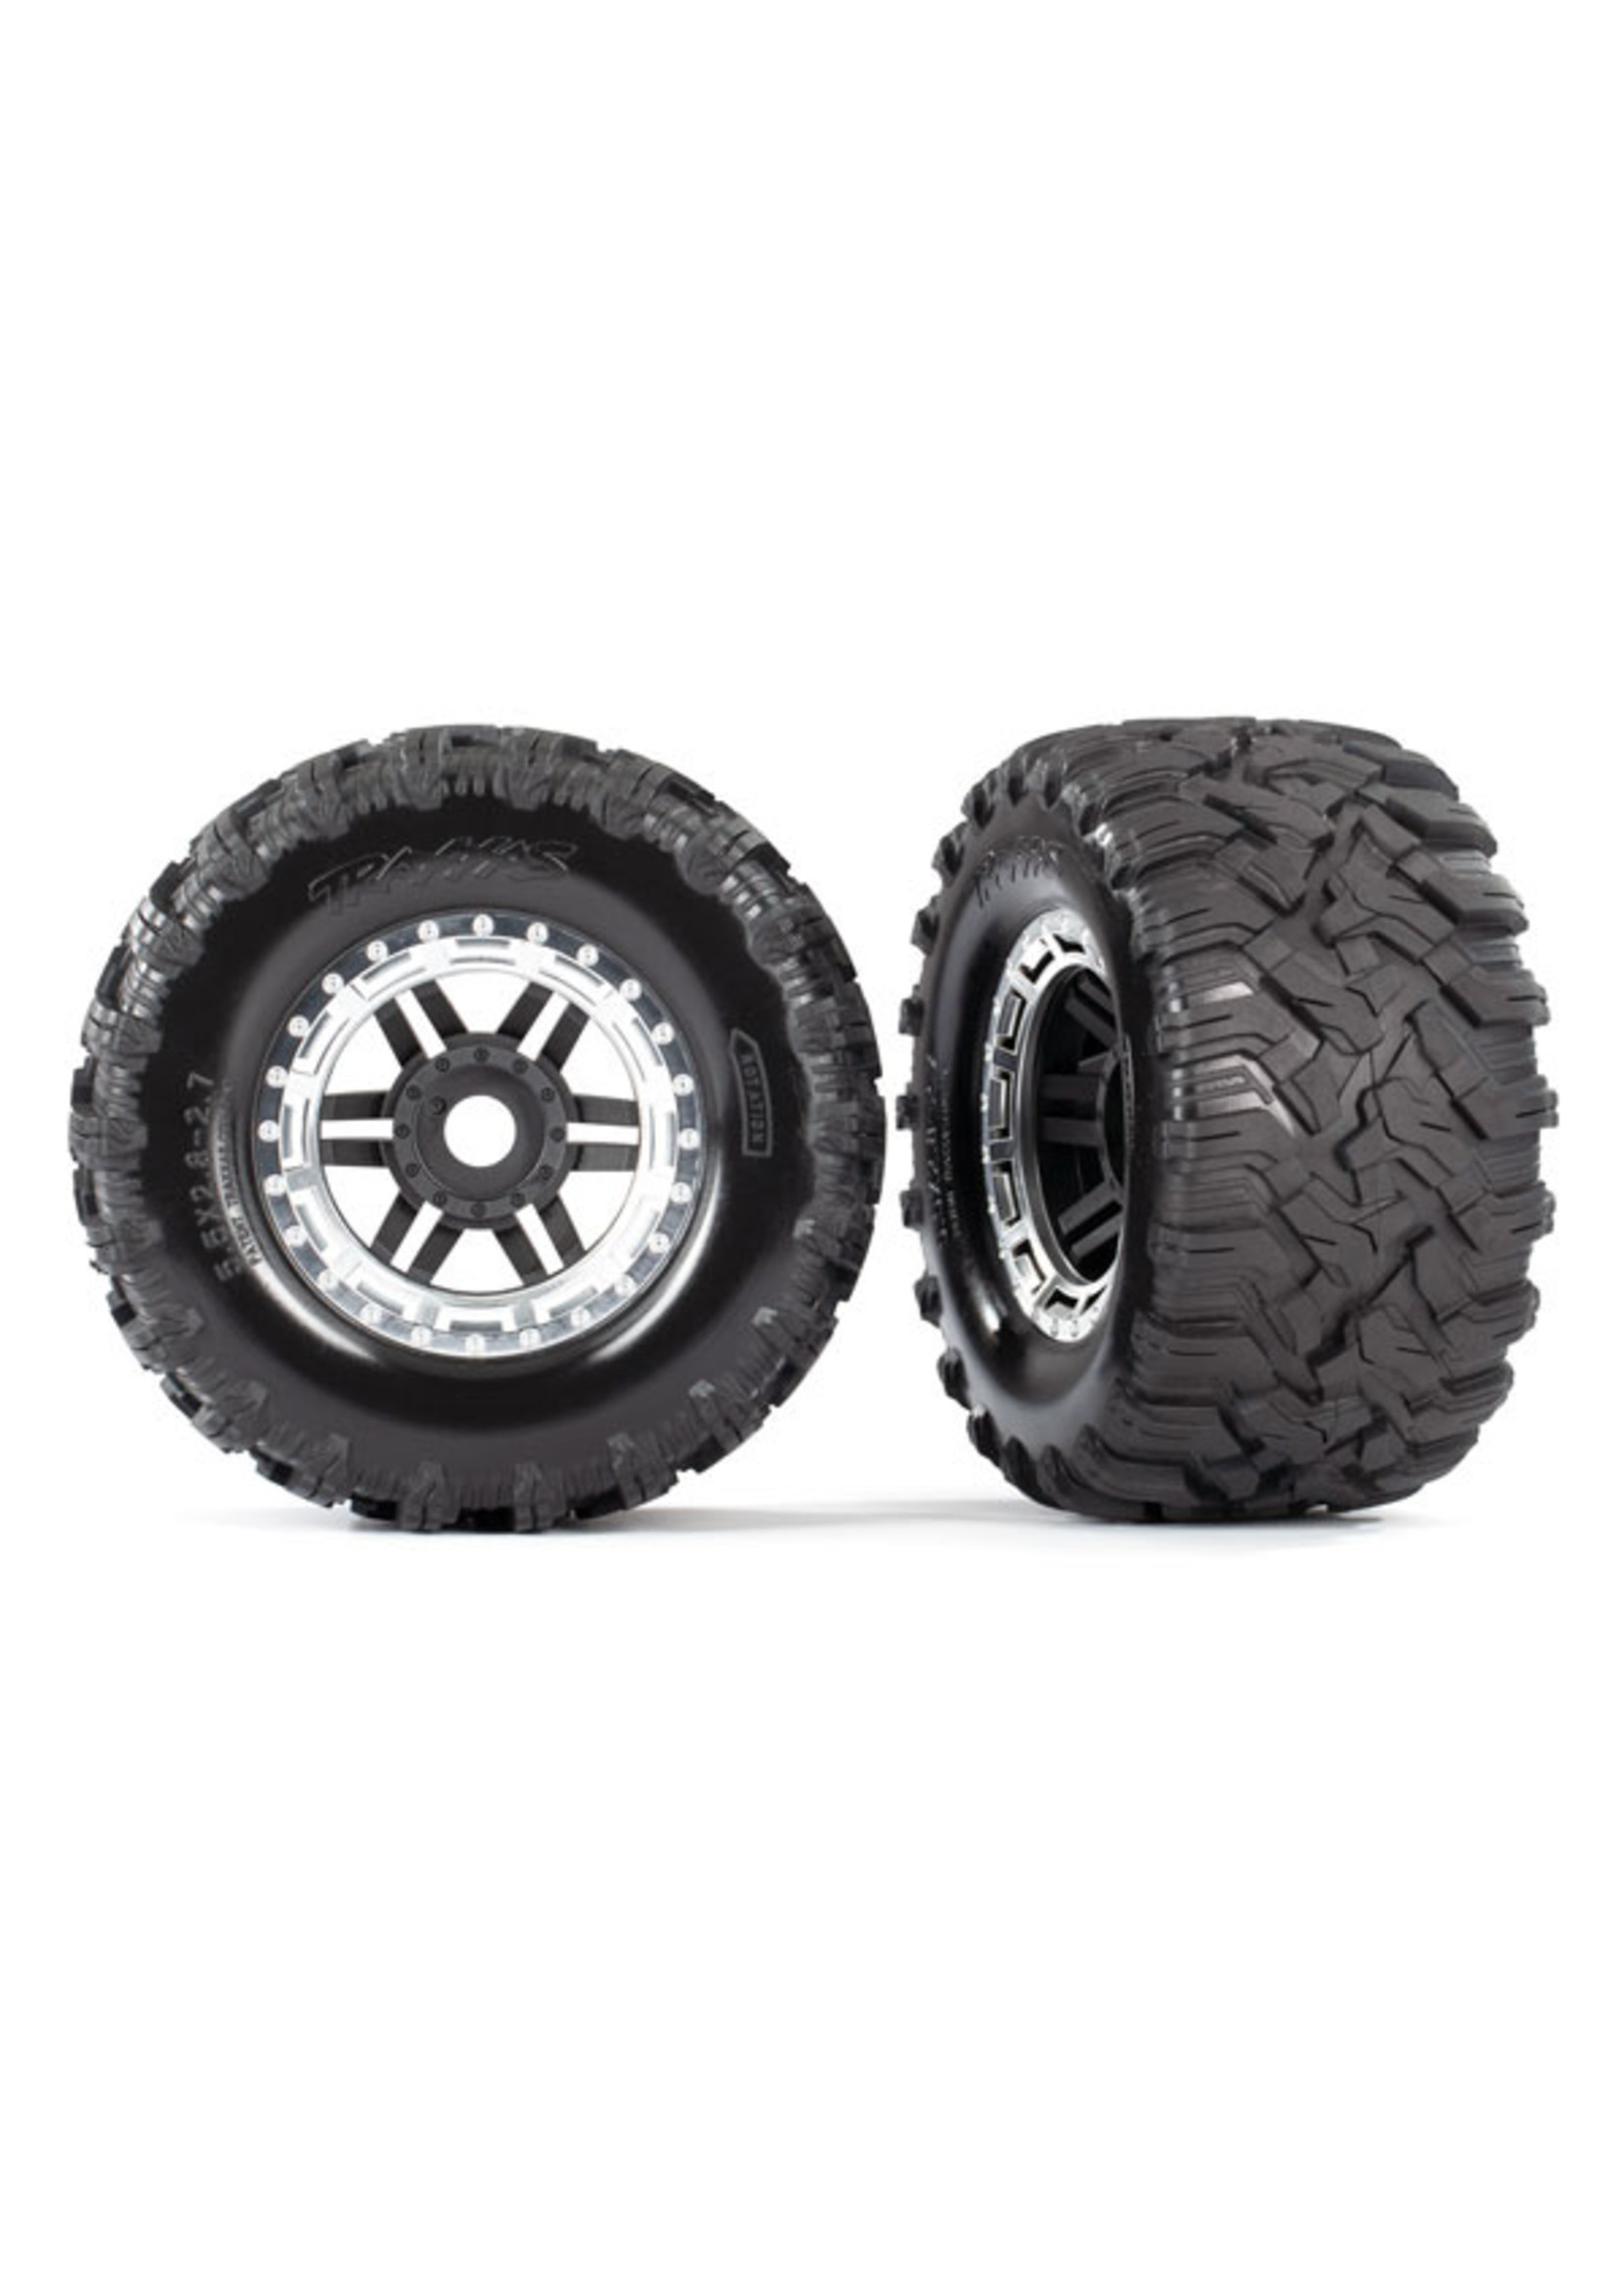 Traxxas 8972X - Satin Chrome Beadlock Wheels / Maxx® MT Tires